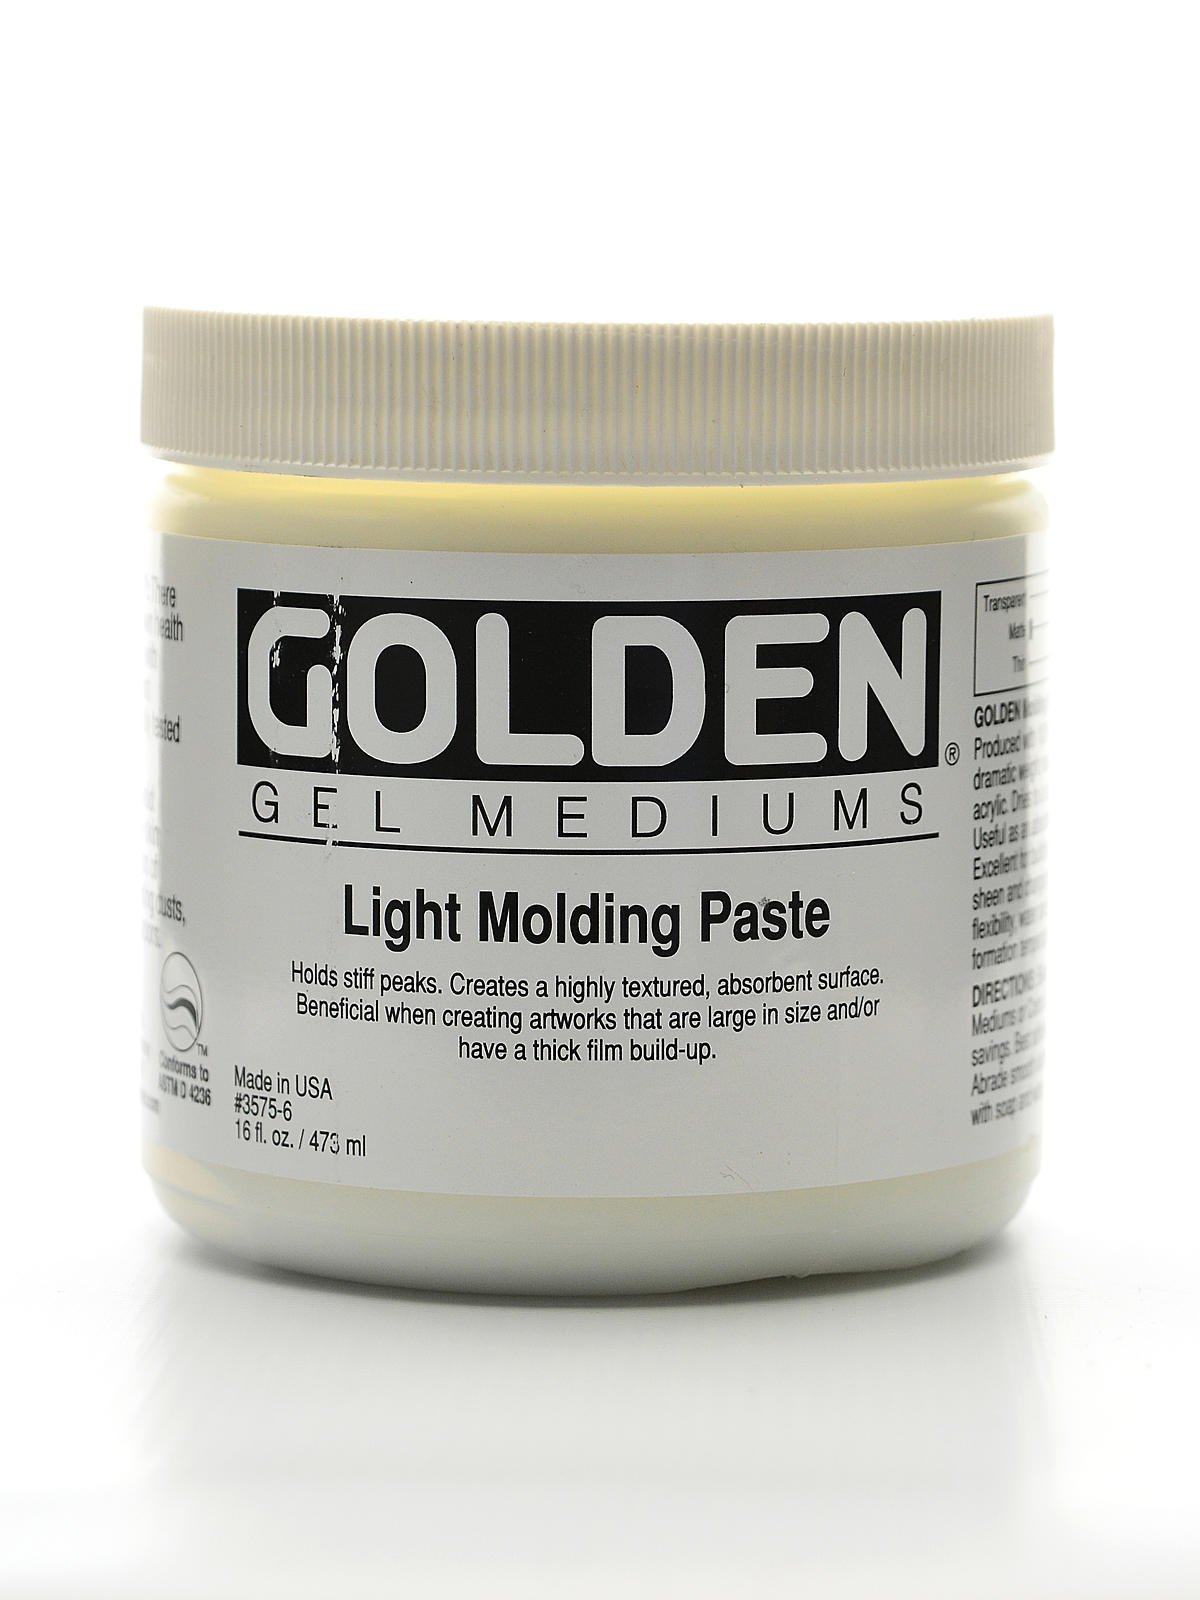 Golden Molding Paste